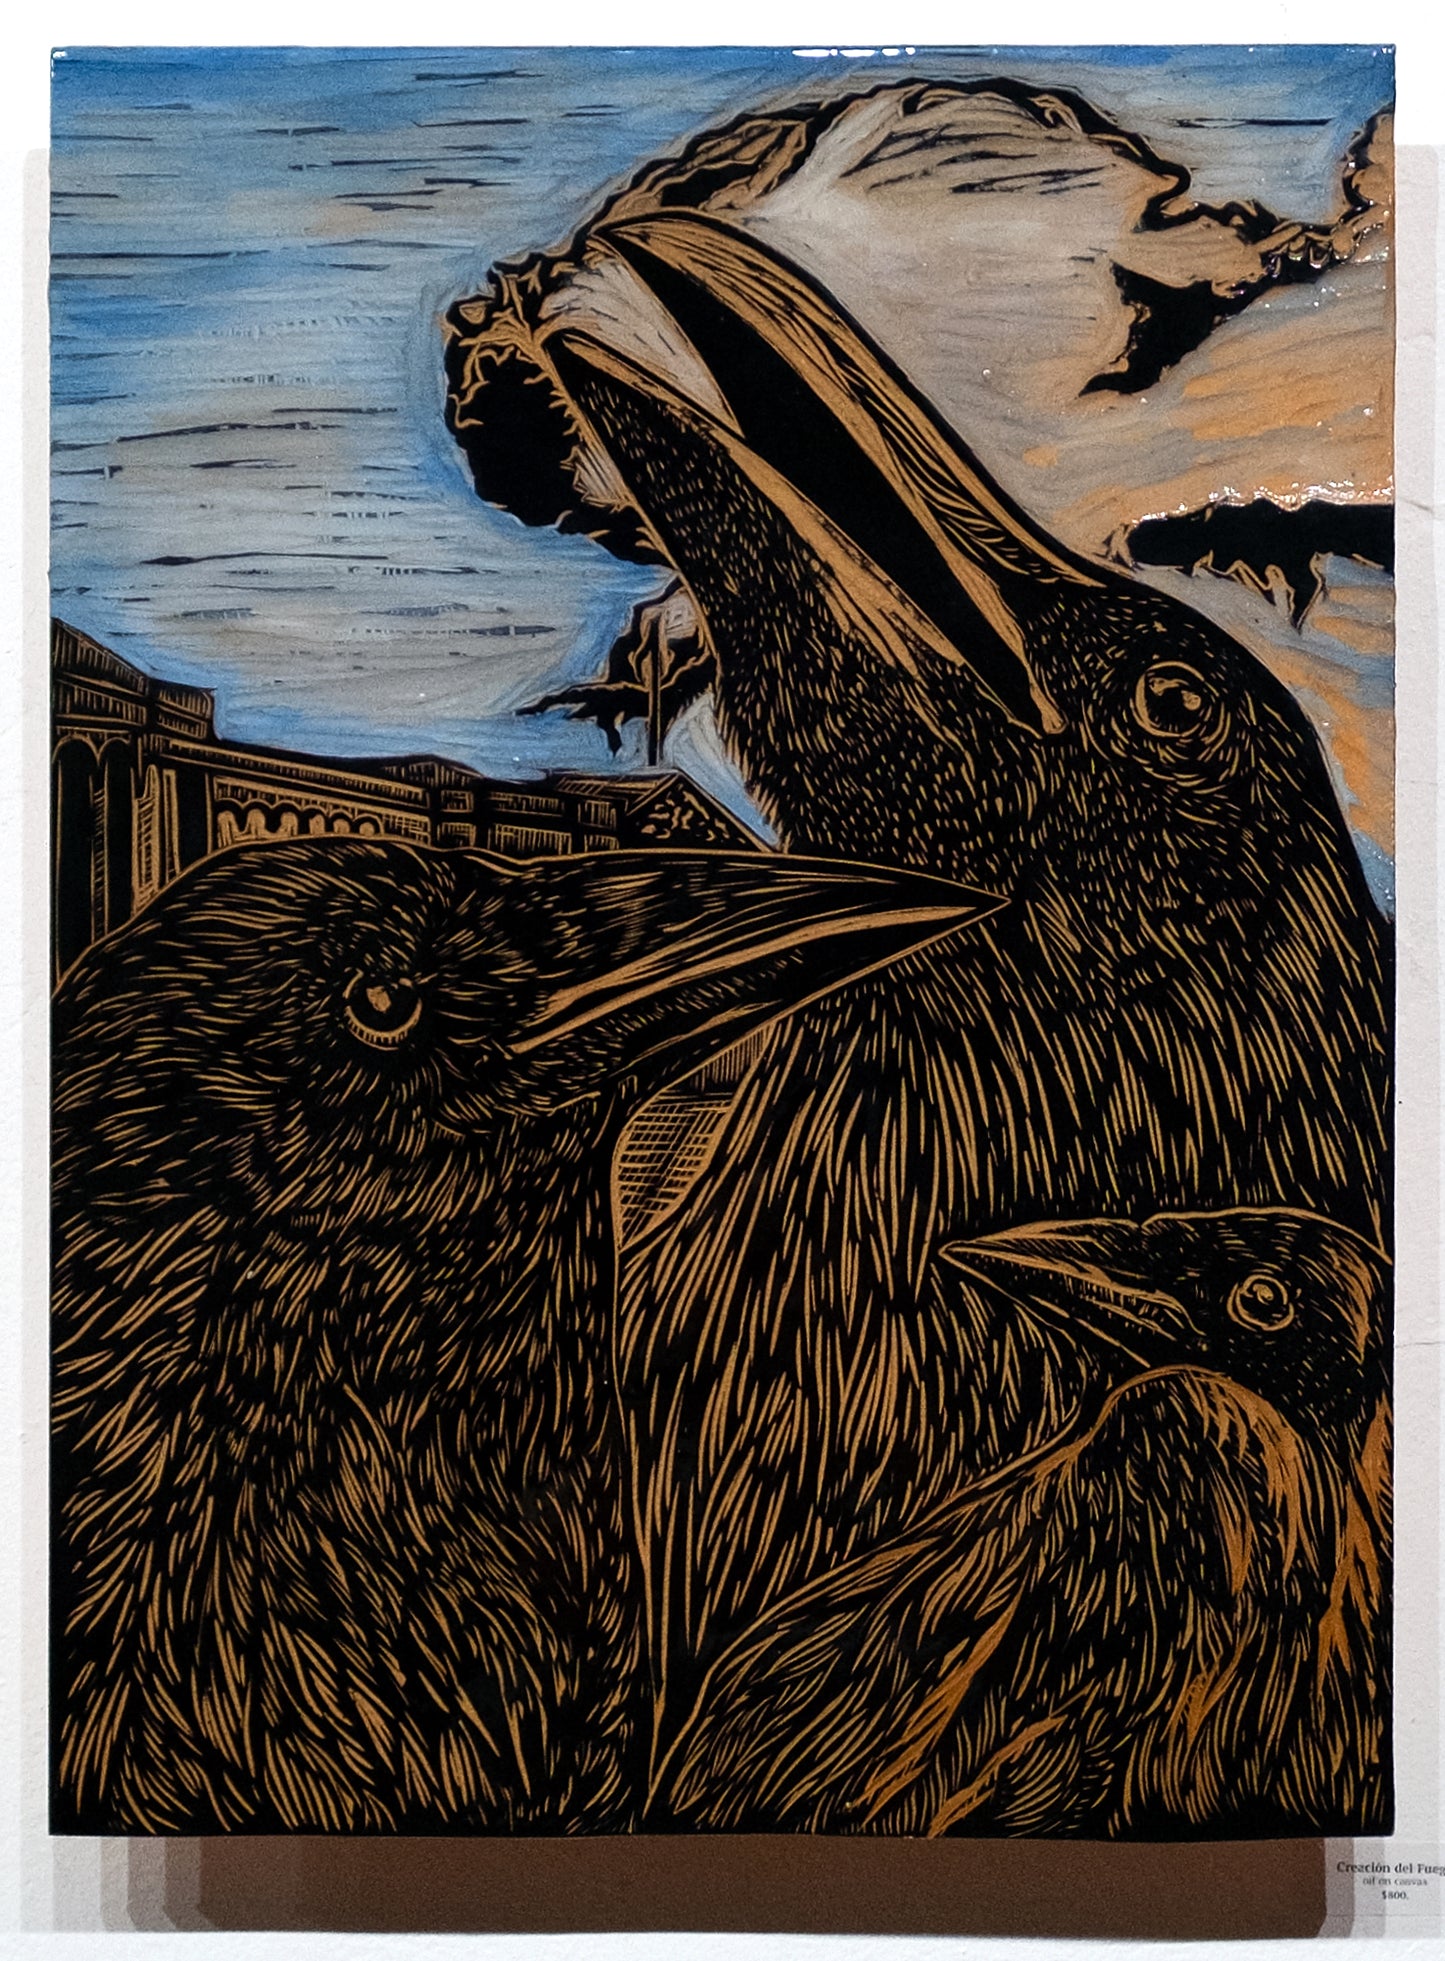 Cuervos by Jhovany De Ala